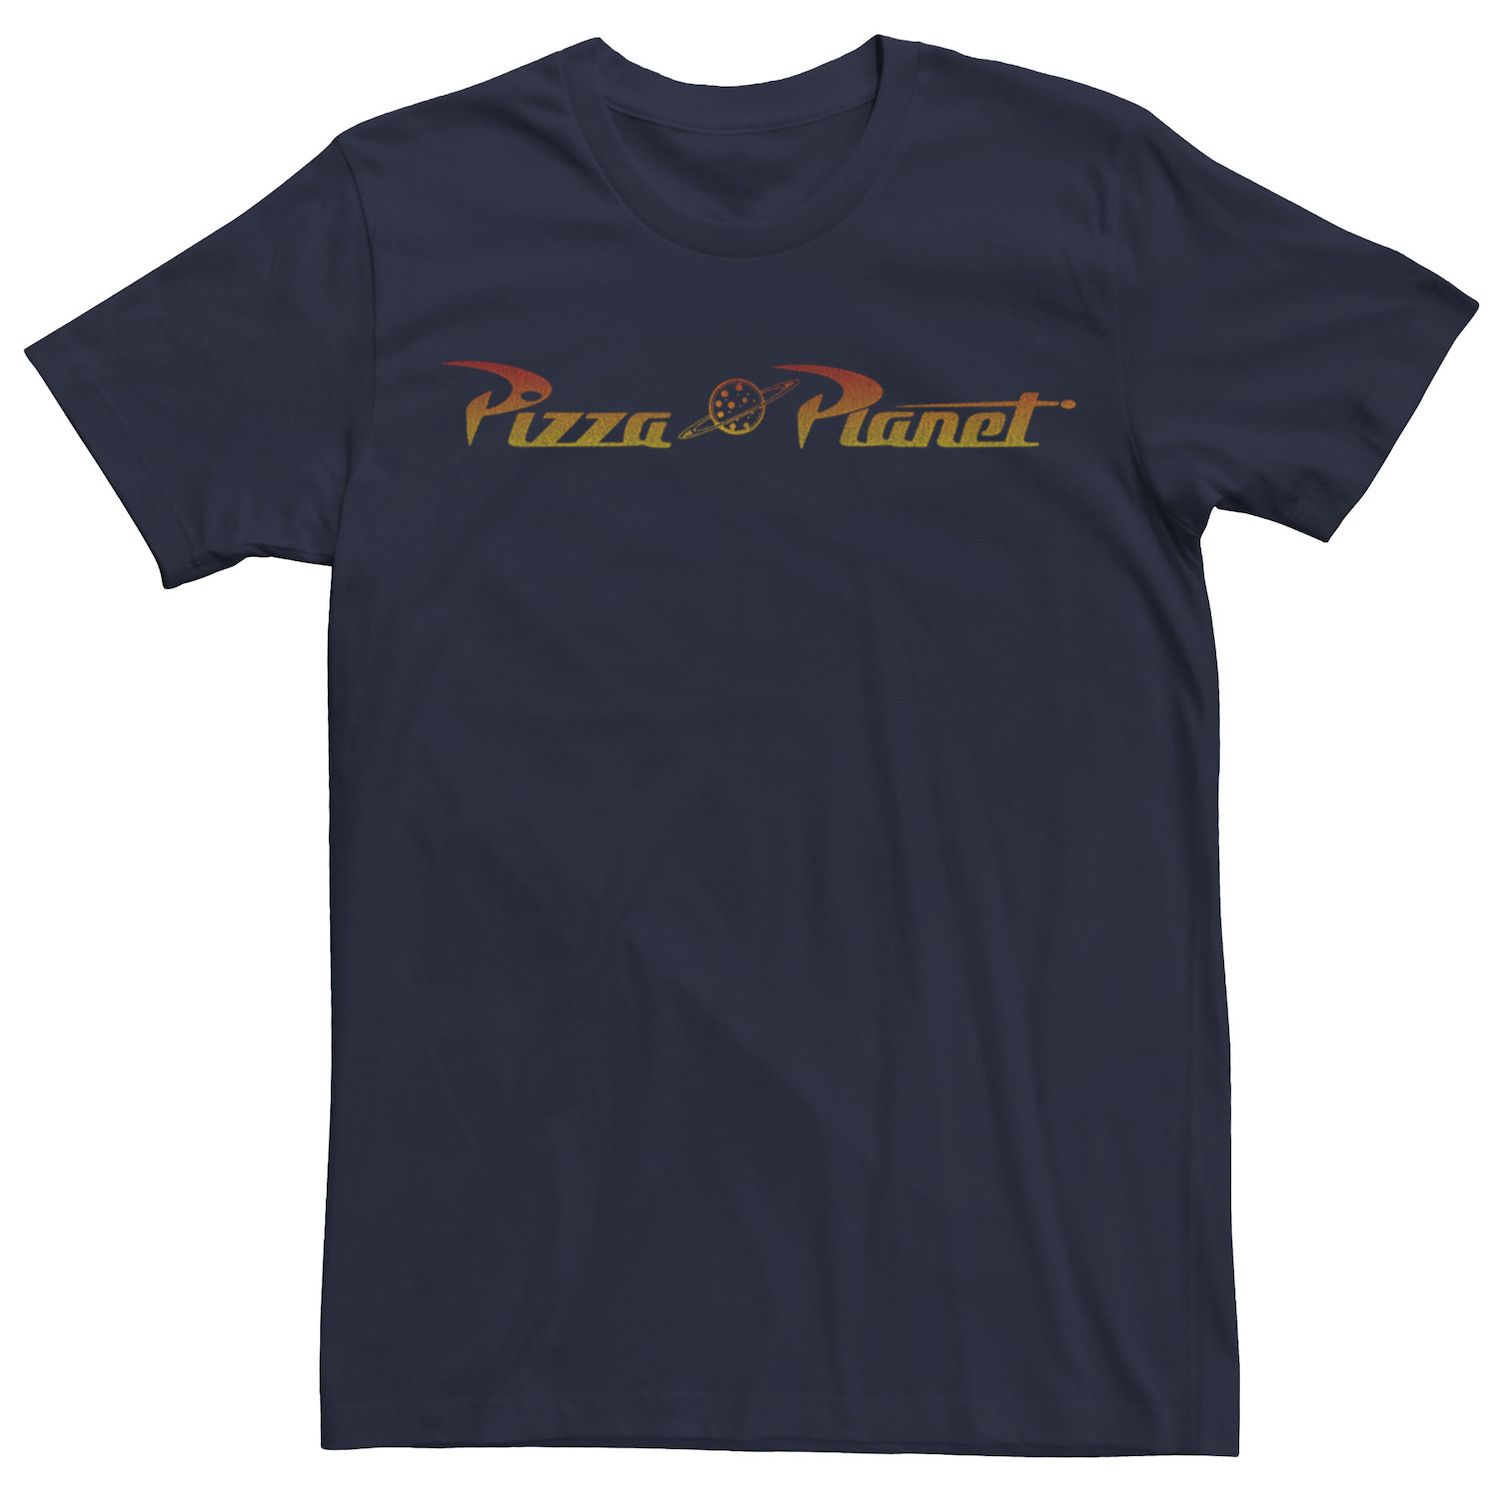 Мужская классическая футболка с логотипом Disney/Pixar «История игрушек Пицца Планета» Disney / Pixar мужская футболка планета пицца s белый